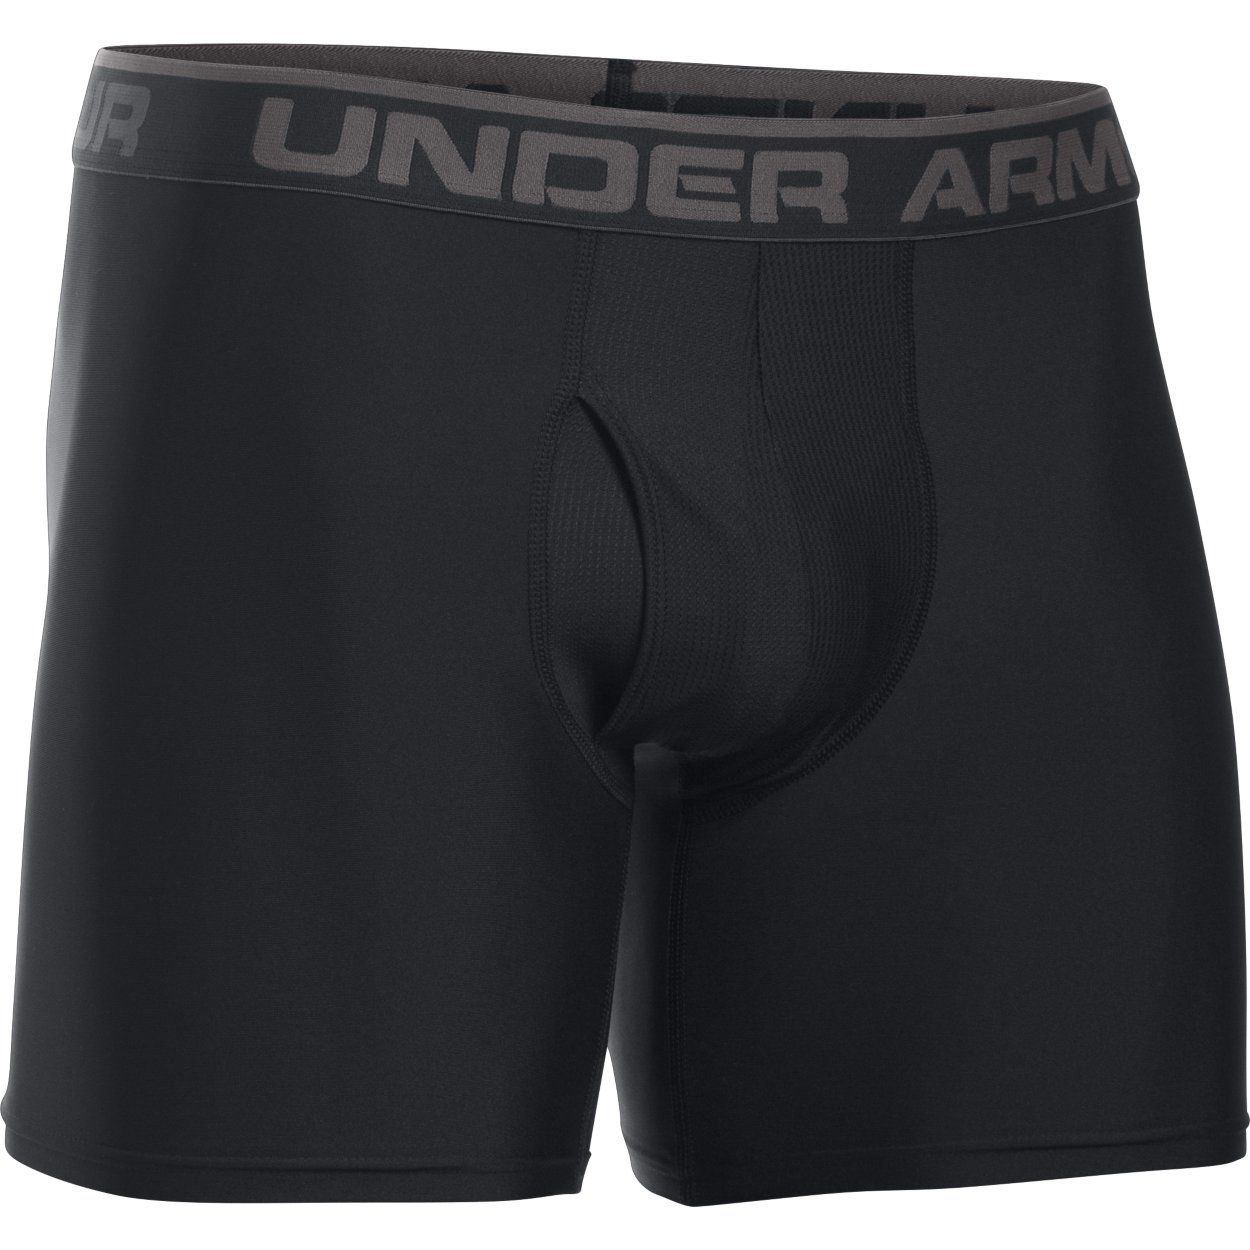 Underwear -  under armour Original Series 6 Boxerjock 7238